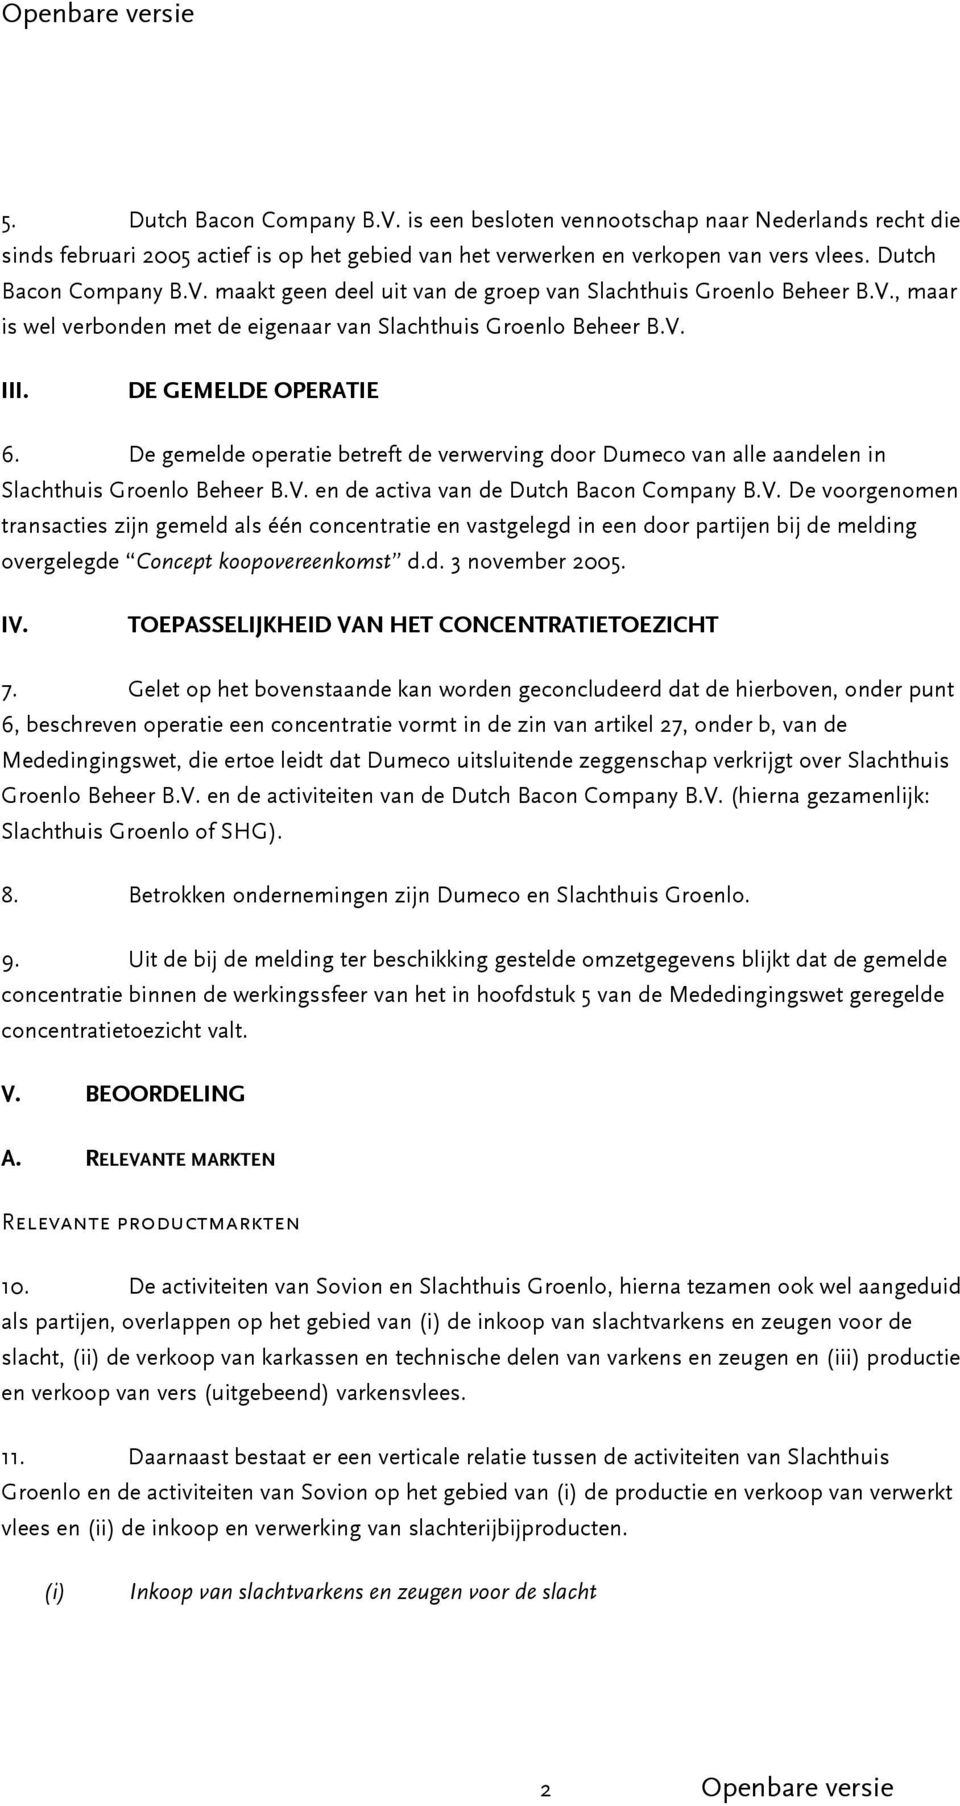 De gemelde operatie betreft de verwerving door Dumeco van alle aandelen in Slachthuis Groenlo Beheer B.V.